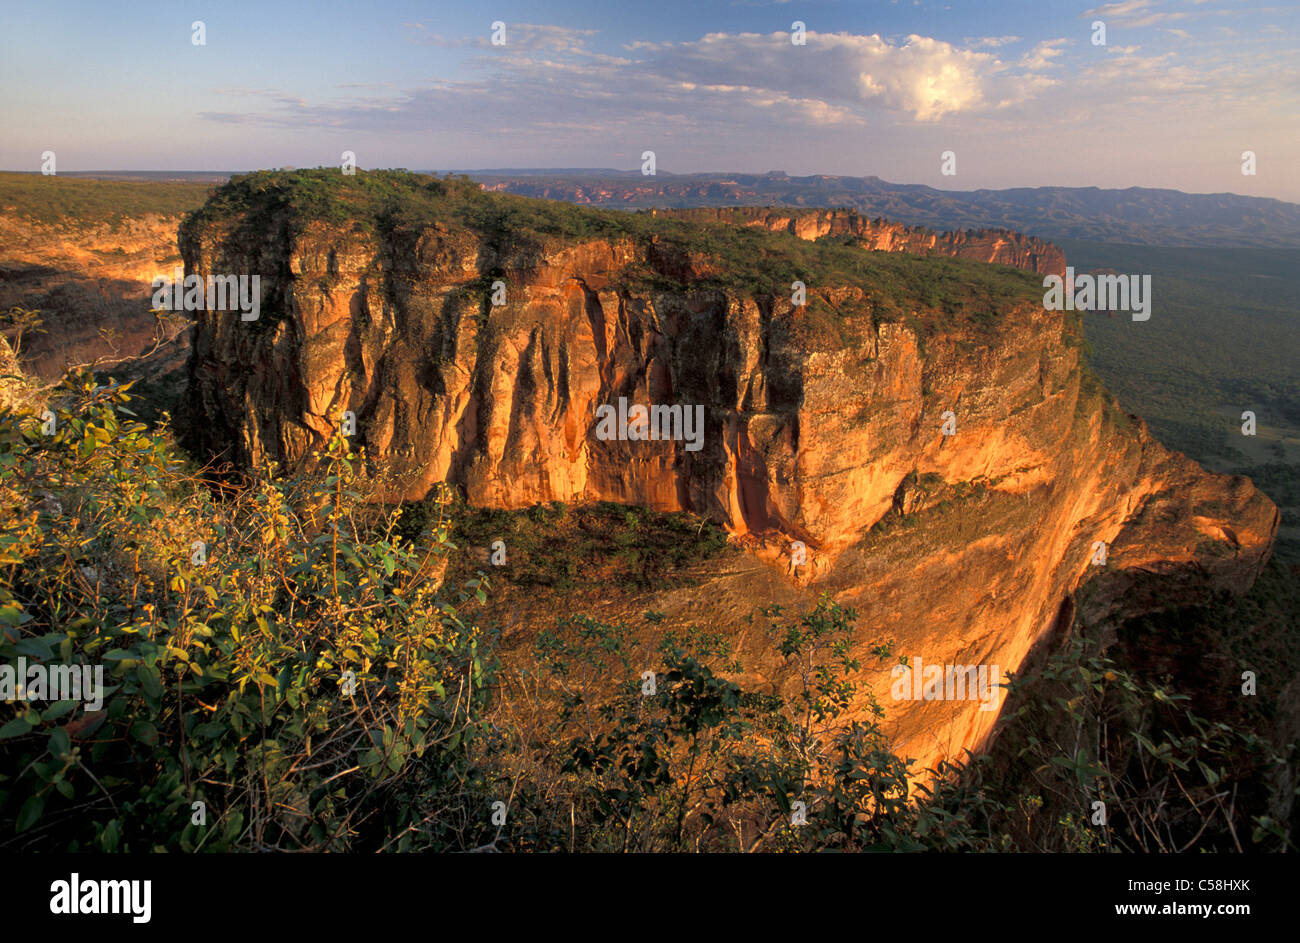 Cidade de Pedra, Chapada dos Guimares près de Cuiaba, Mato Grosso, Brésil, Amérique du Sud, des roches, paysage Banque D'Images